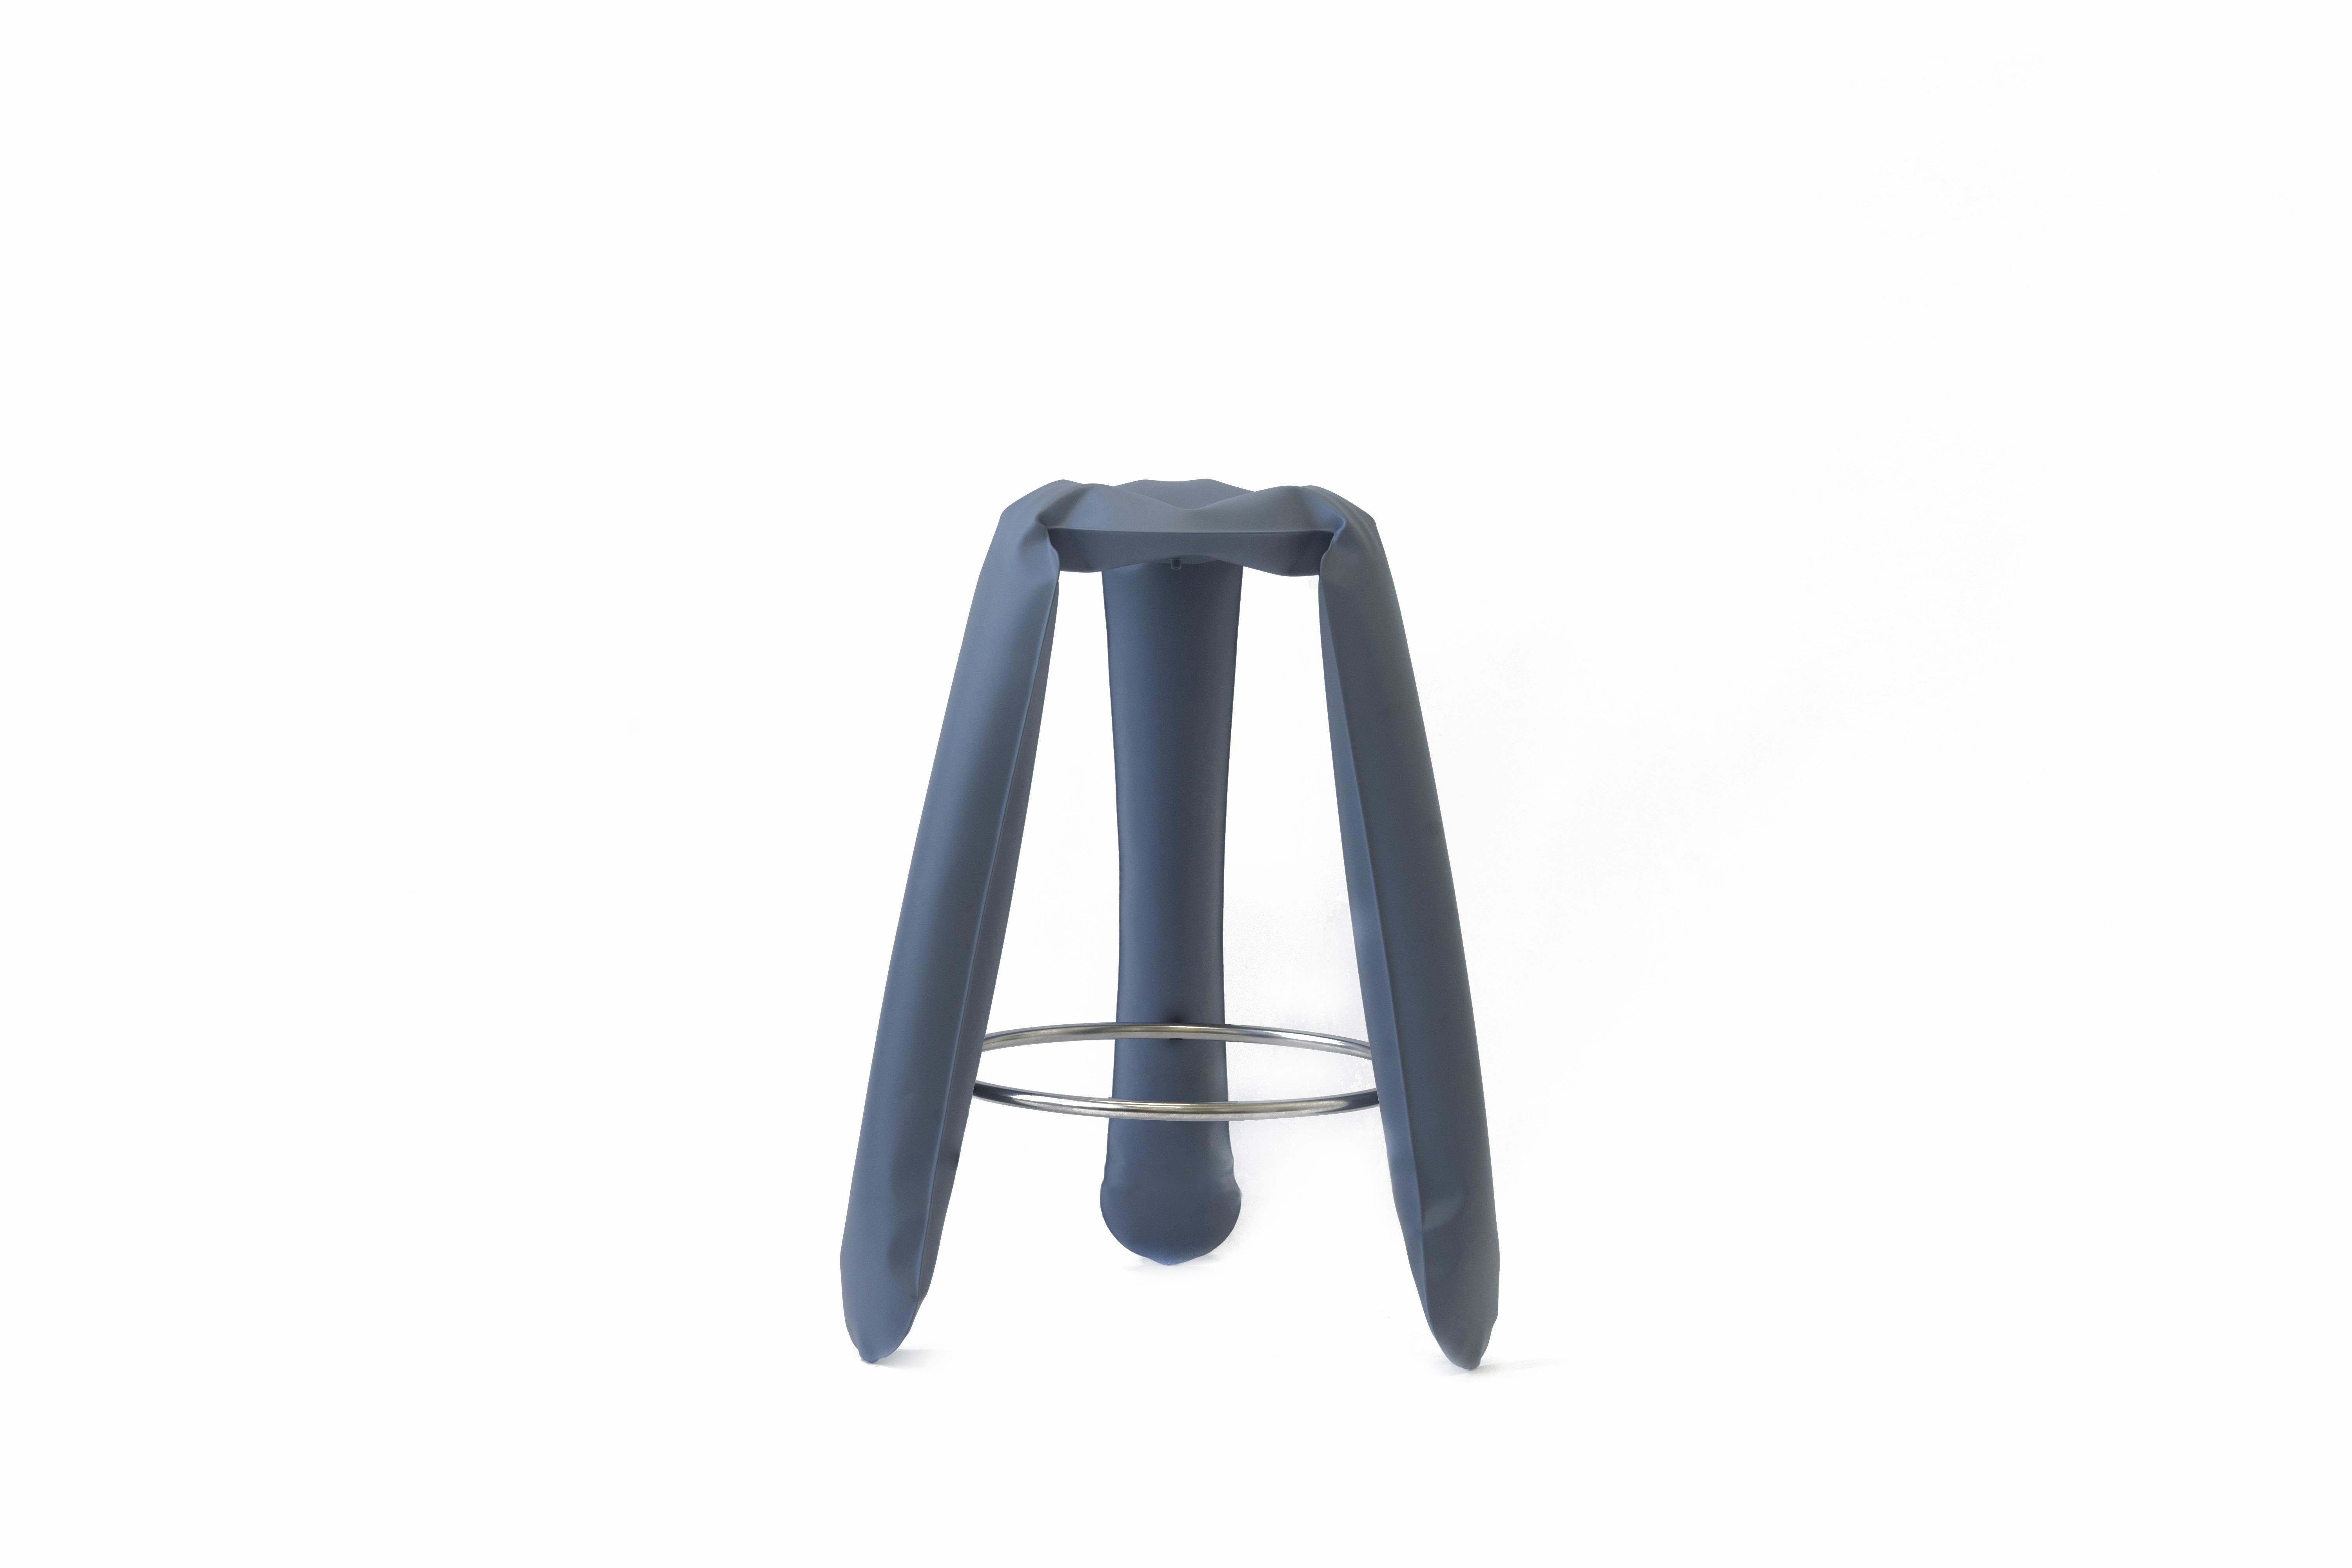 Tabouret de bar en acier gris bleu Plopp de Zieta
Dimensions : D 35 x H 75 cm 
Matériau : Acier au carbone. 
Finition : Revêtement en poudre.
Disponible en couleurs : Beige, noir, blanc, bleu, graphite, mousse, gris umbra, or flamboyant et bleu